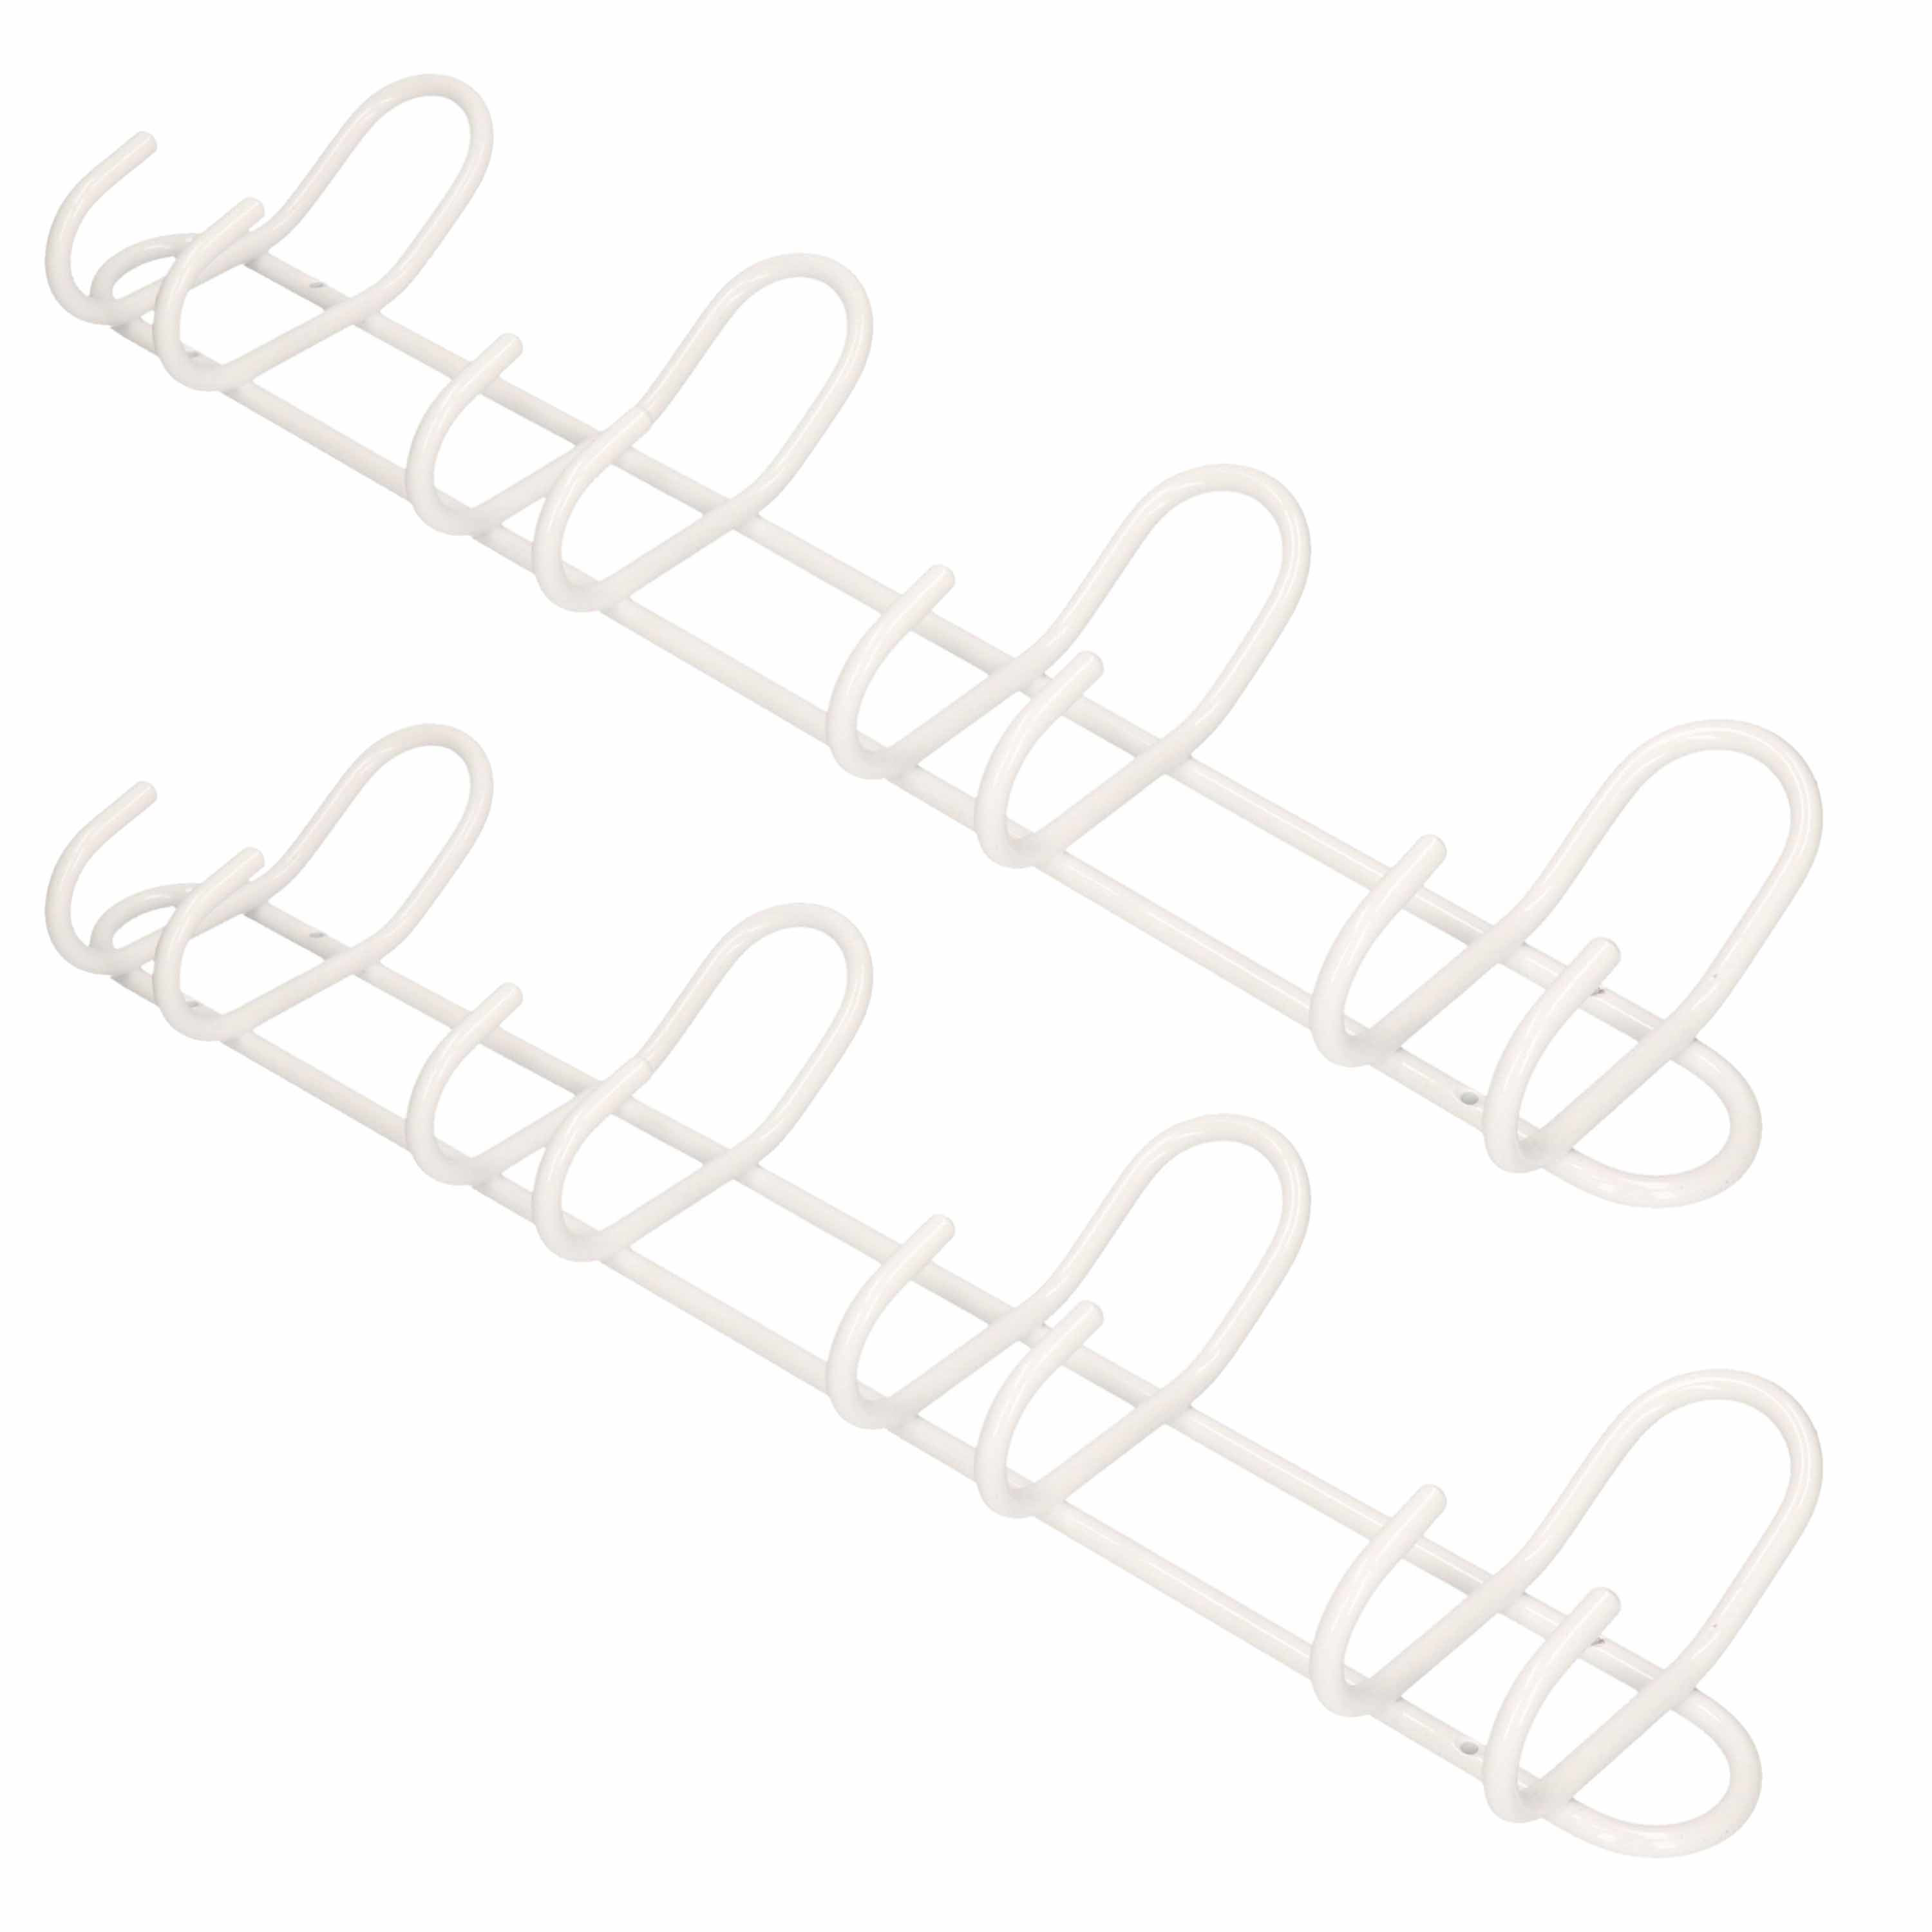 2x Luxe kapstokken-jashaken-wandstokken wit aluminium 4x dubbele haak 14,5 x 53 cm